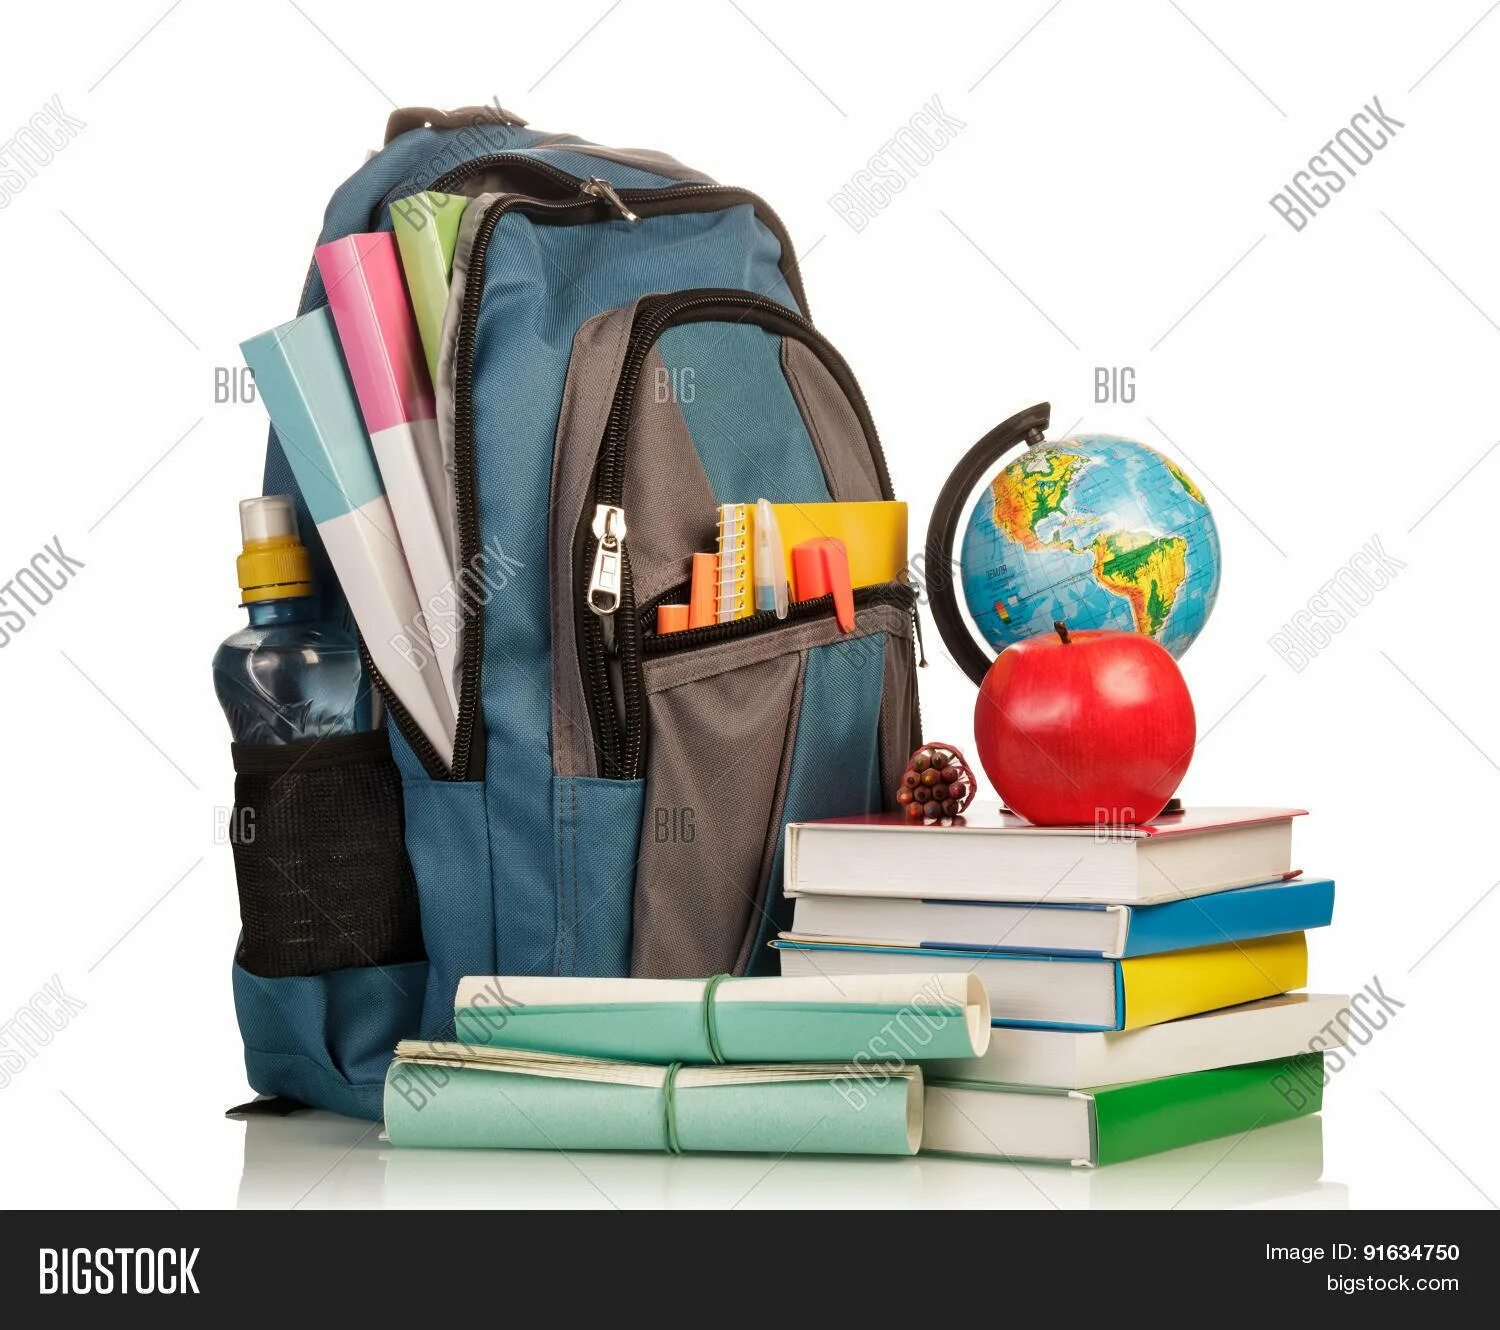 Рюкзак со школьными принадлежностями. Школьник с рюкзаком. Школьный рюкзак с учебниками. Портфель с канцтоварами. Красивее портфель хвоя средства поставь